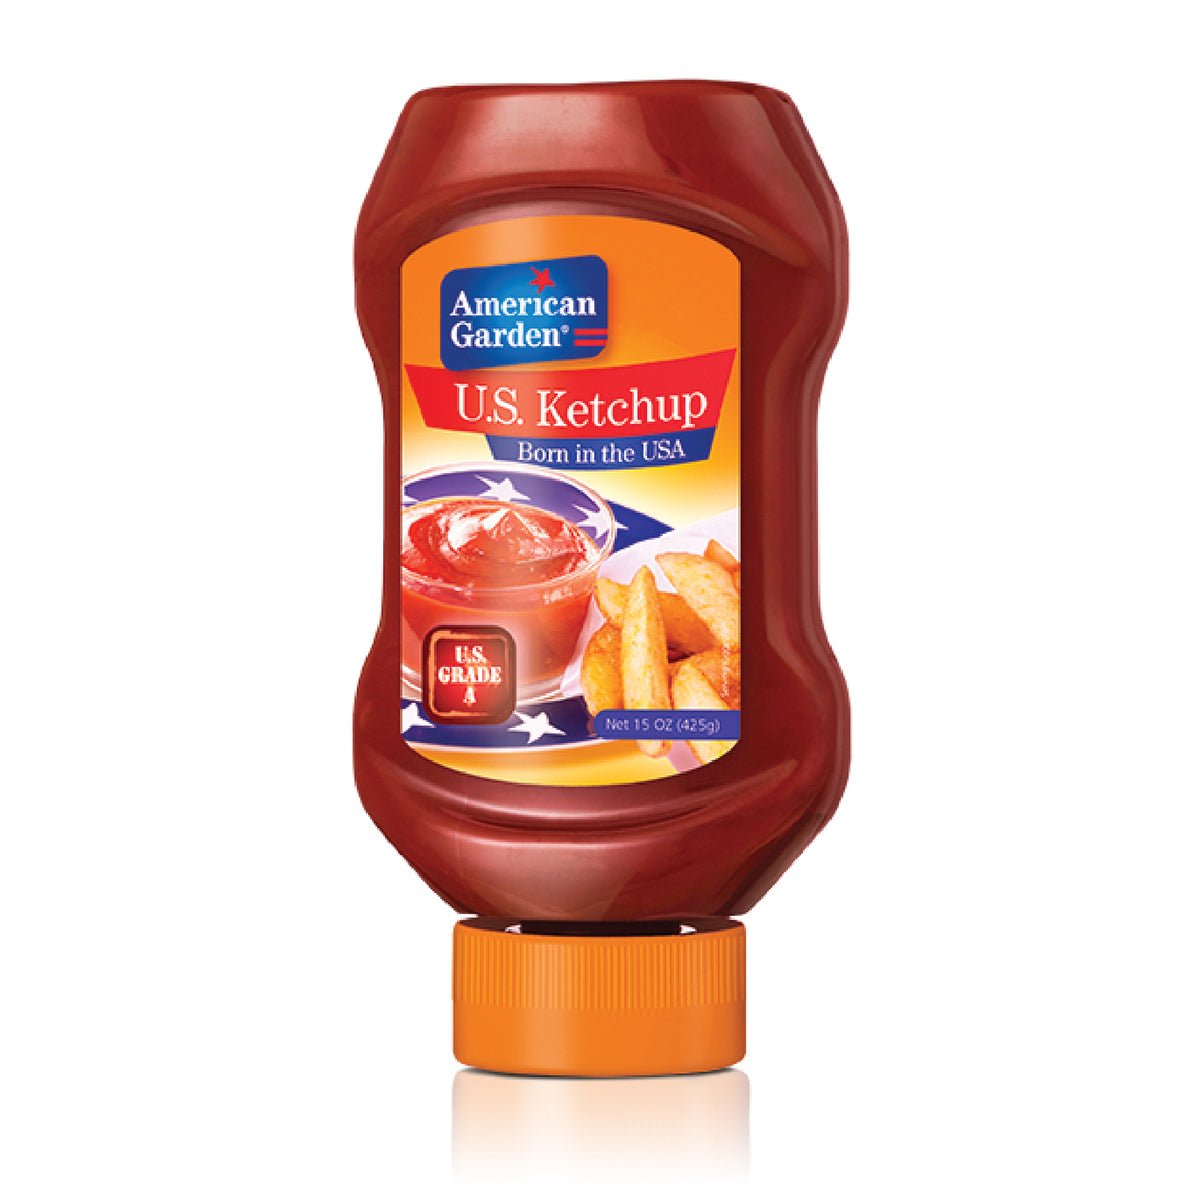 American Garden Ketchup - Tulsidas